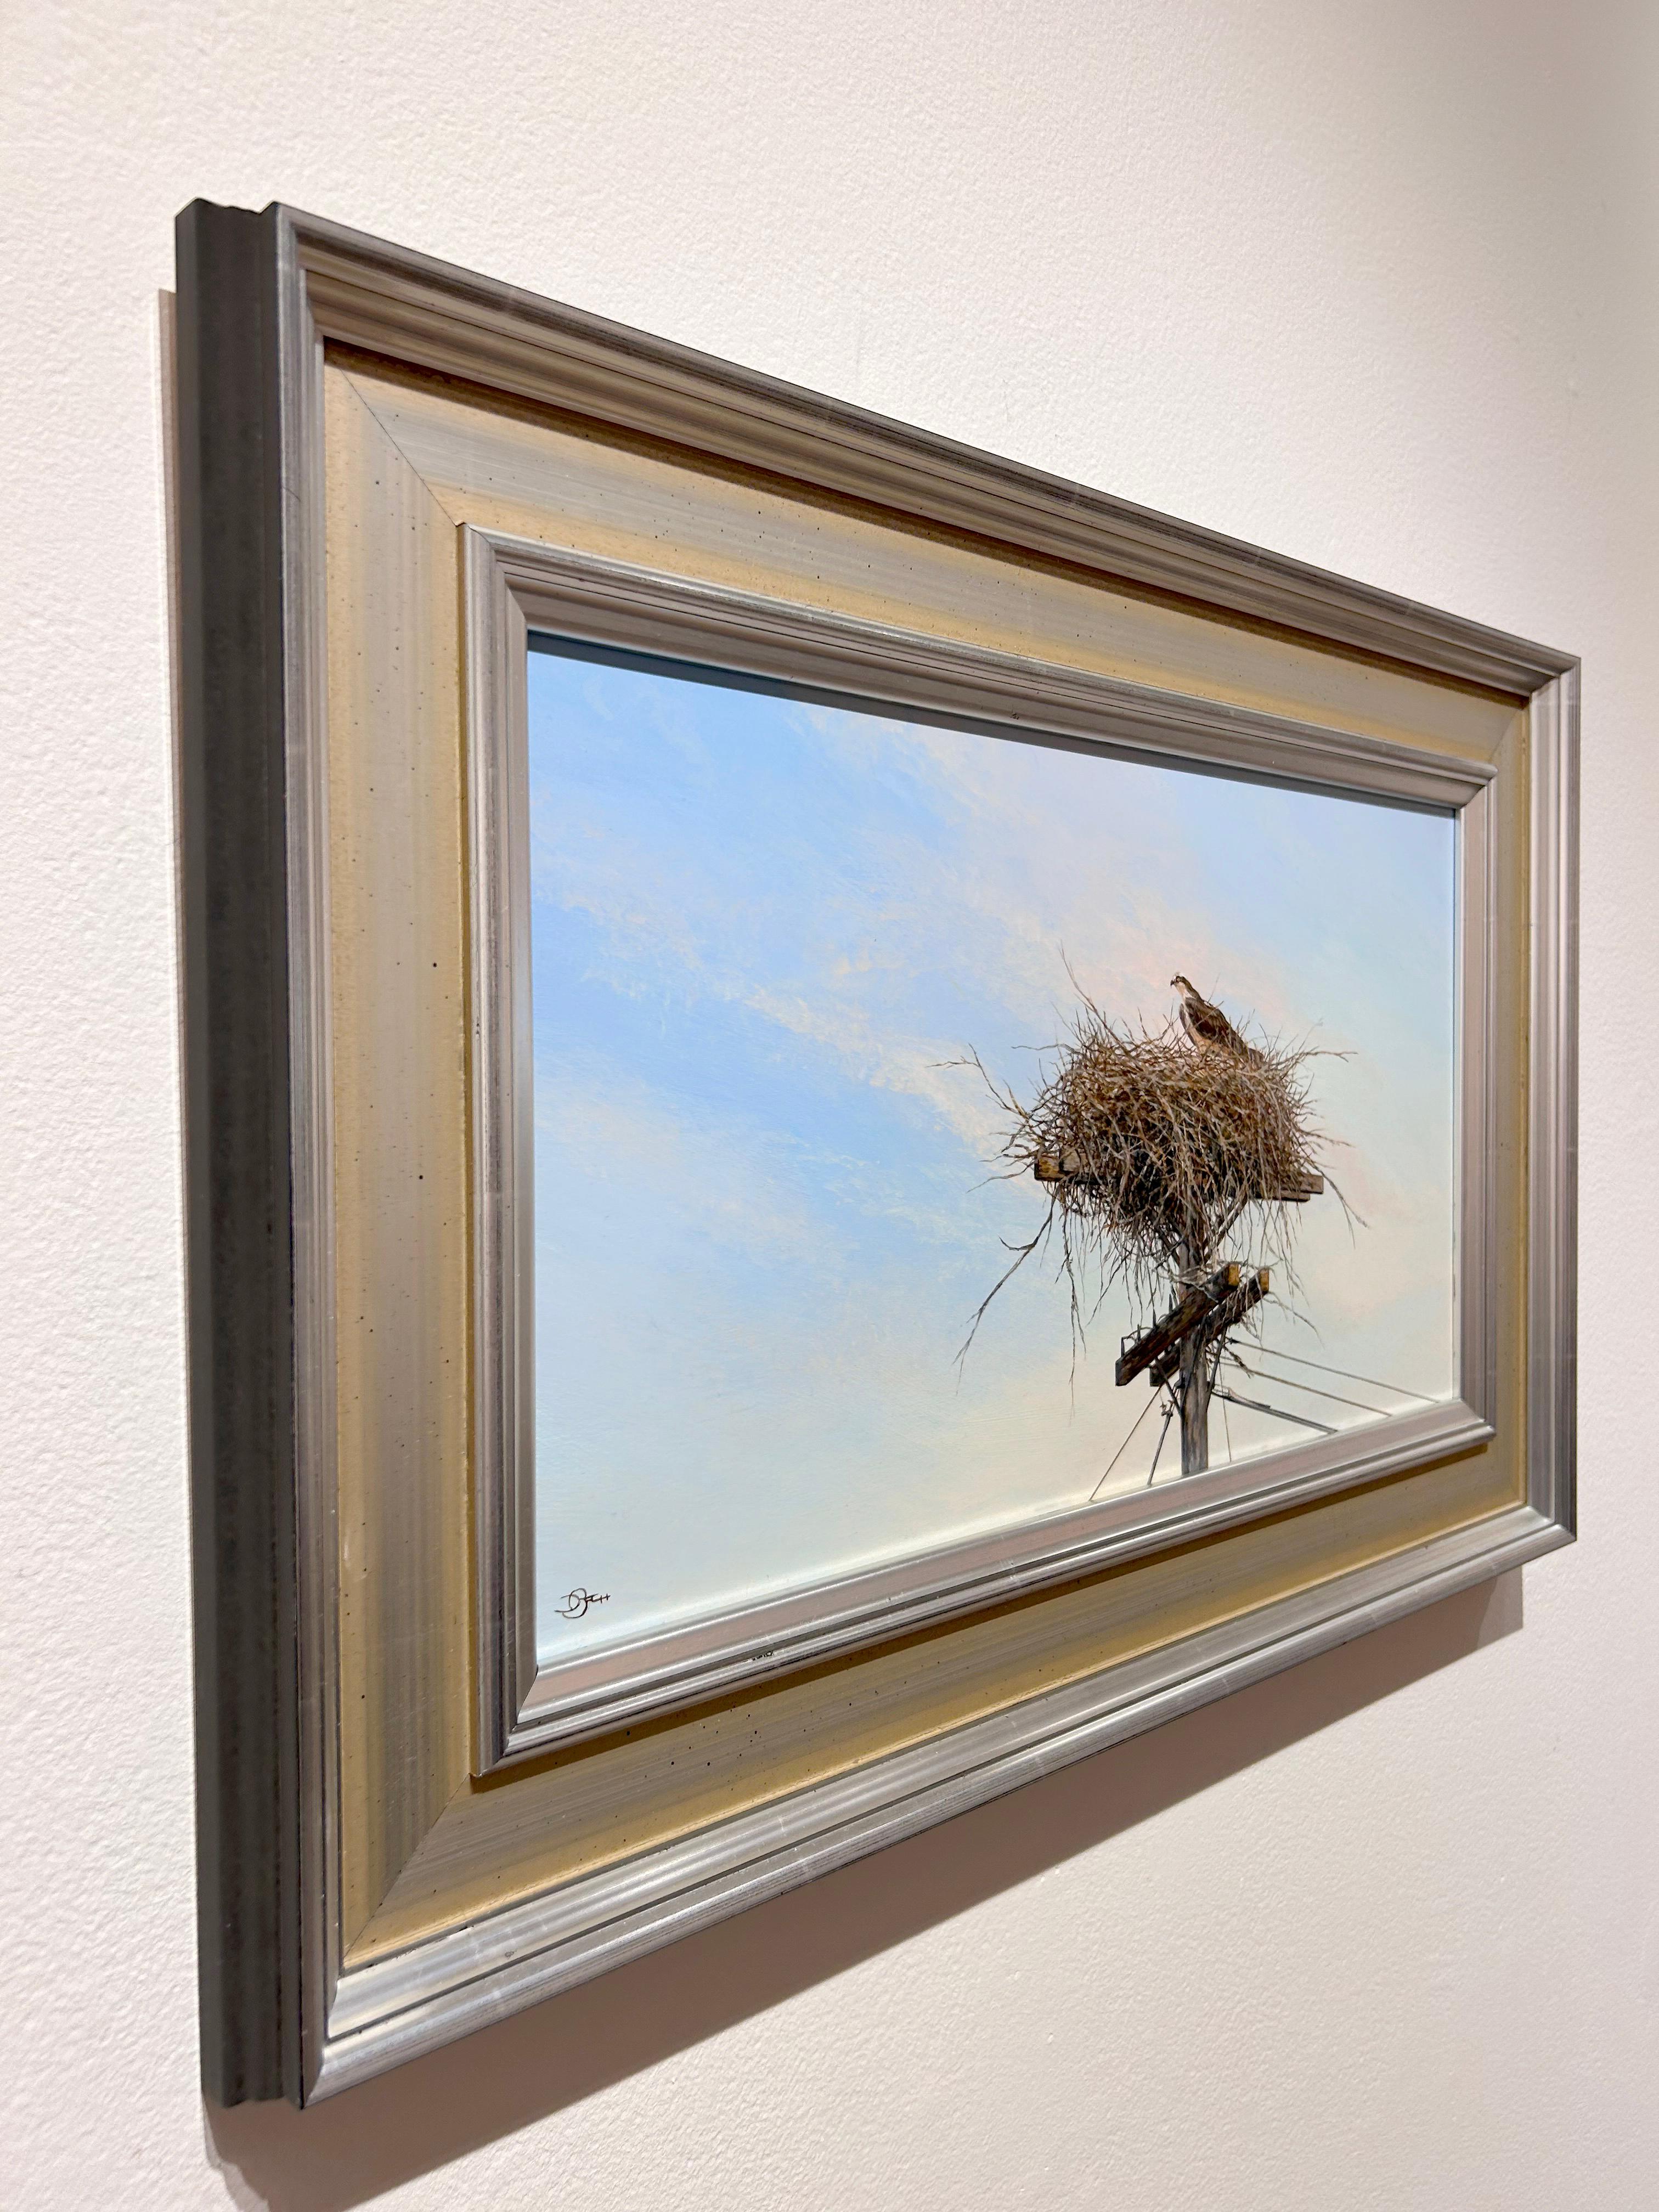 Bach, „Eine kleine Hilfe von meinen Freunden“, realistische Osprey-Landschaft mit Vogelaufsatz  (Realismus), Painting, von Del Bourree Bach